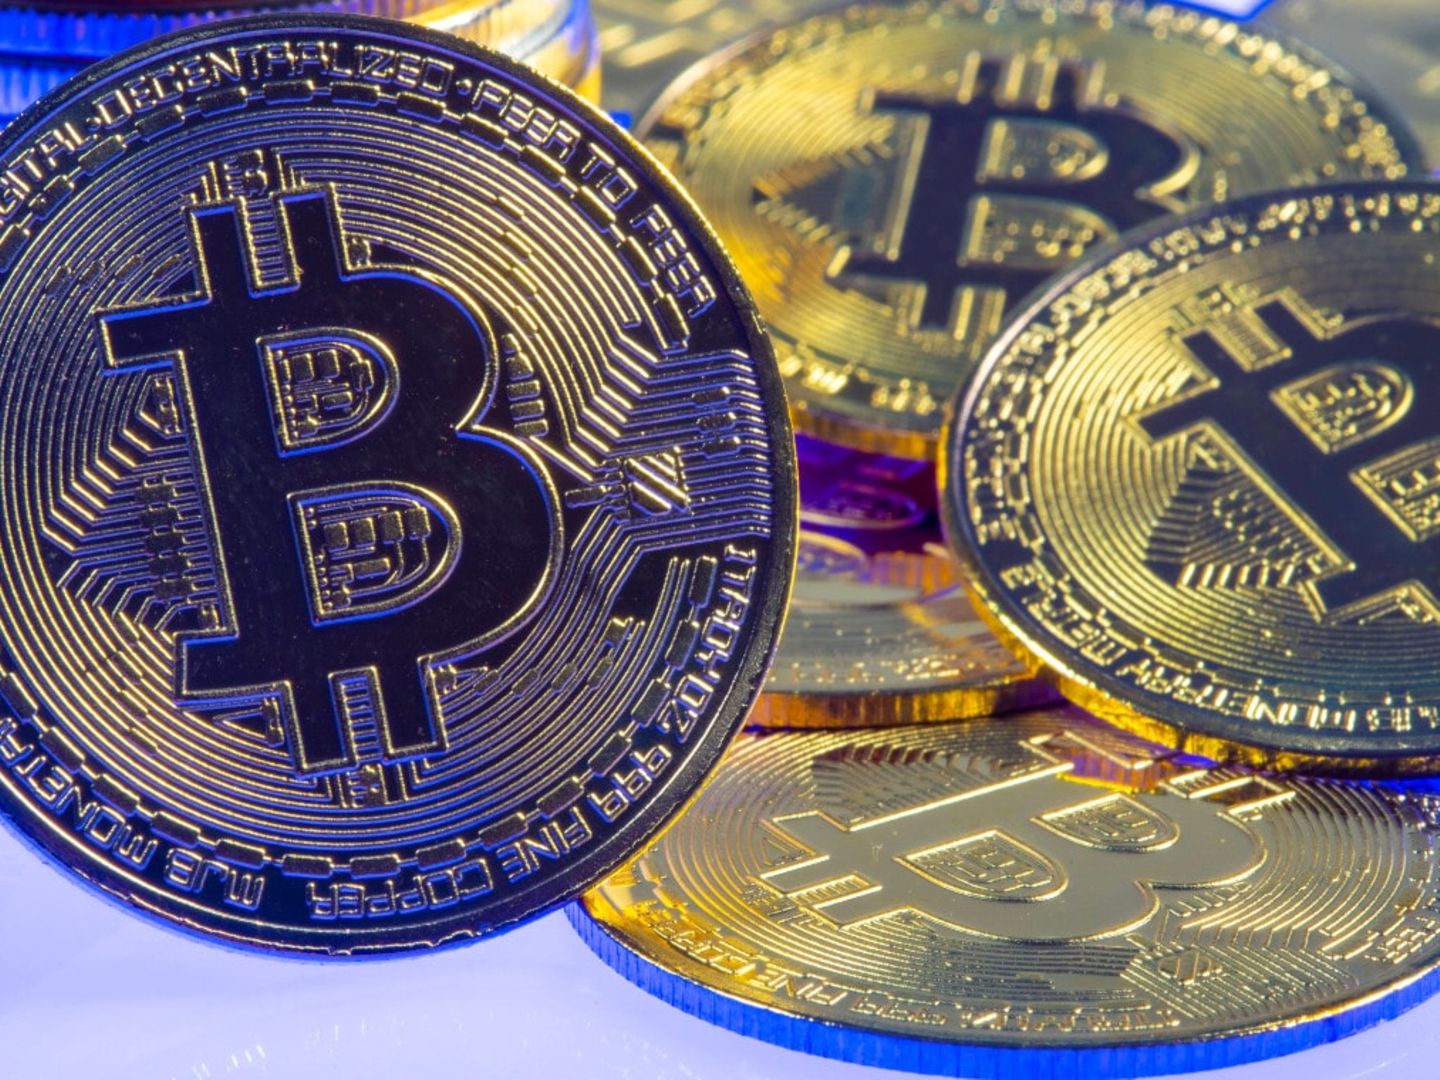 indirekt in bitcoin investieren in bitcoin zu investieren ist sicher